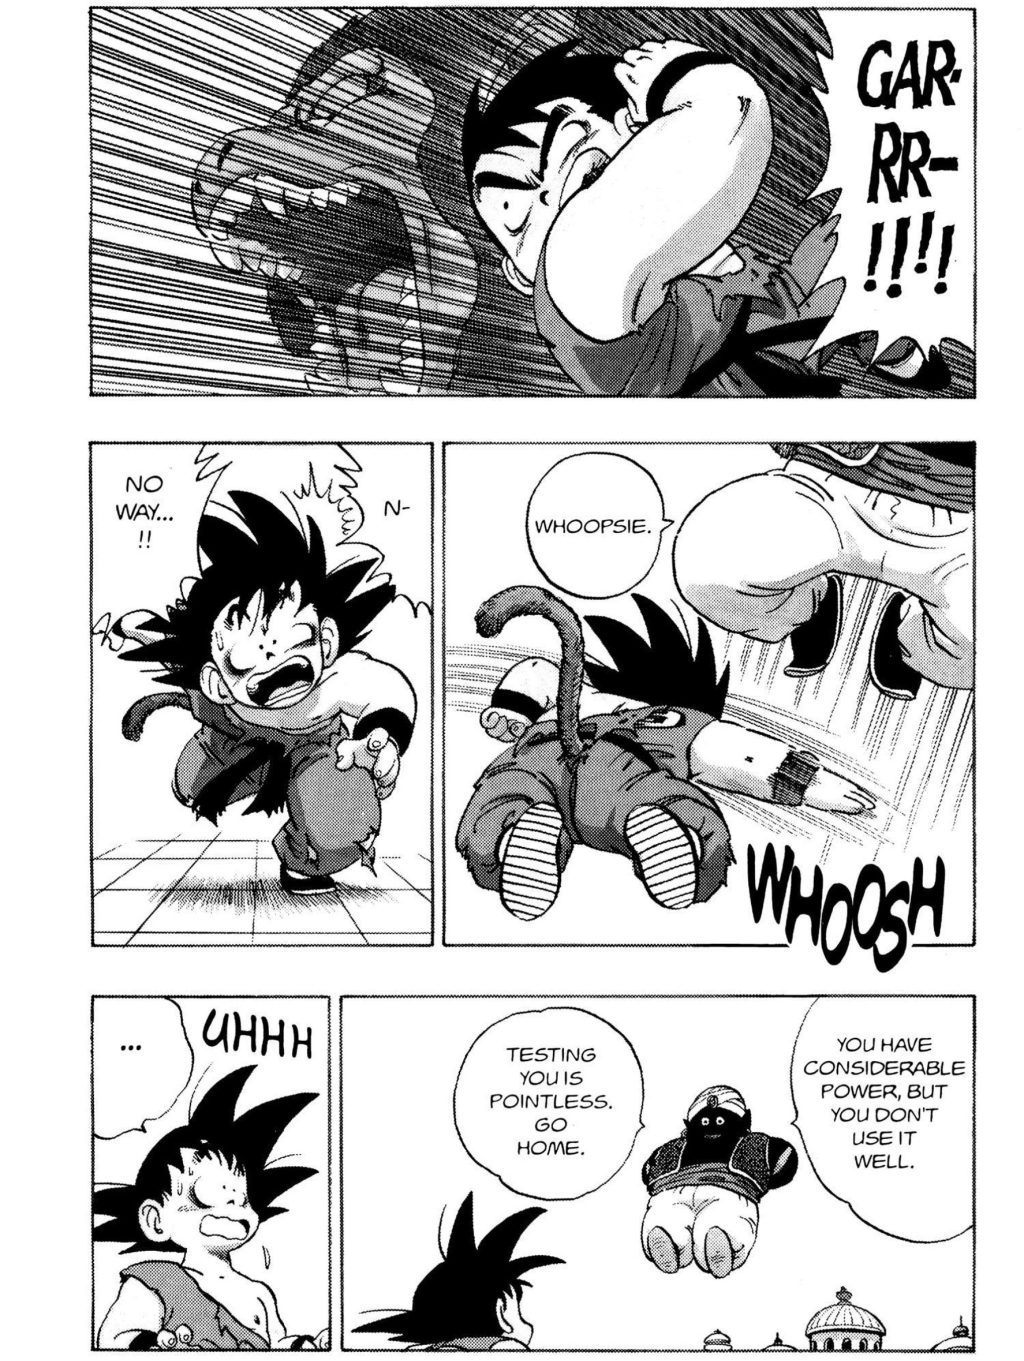 Popo facilmente ignora as tentativas de Goku de atacá-lo em Dragon Ball Capítulo 163 "O Santuário de Kami-sama" (1988), Shueisha.  Palavras e arte de Akira Toriyama.